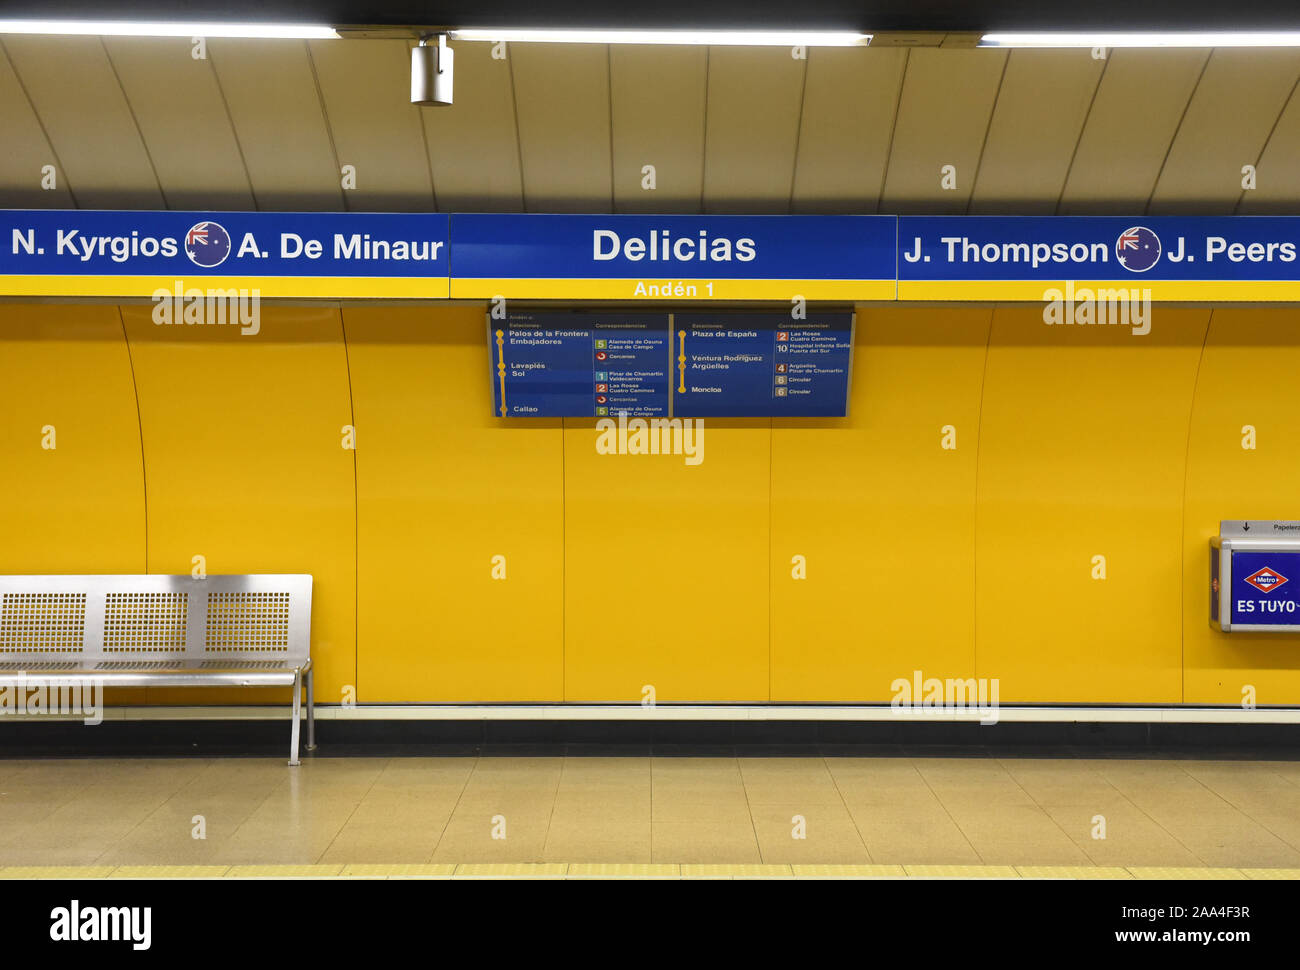 La station de métro Delicias de Madrid vu par les noms de l'équipe nationale australienne Nick Kyrgios tennis player.La ligne 3 stations de métro de Madrid ont les noms des joueurs de tennis et les équipes qui s'affronteront dans le nouveau tournoi de tennis de la coupe Davis qui se tiendra à Madrid pour la première fois. Il va prendre demain mardi 19 novembre, 2019. Banque D'Images